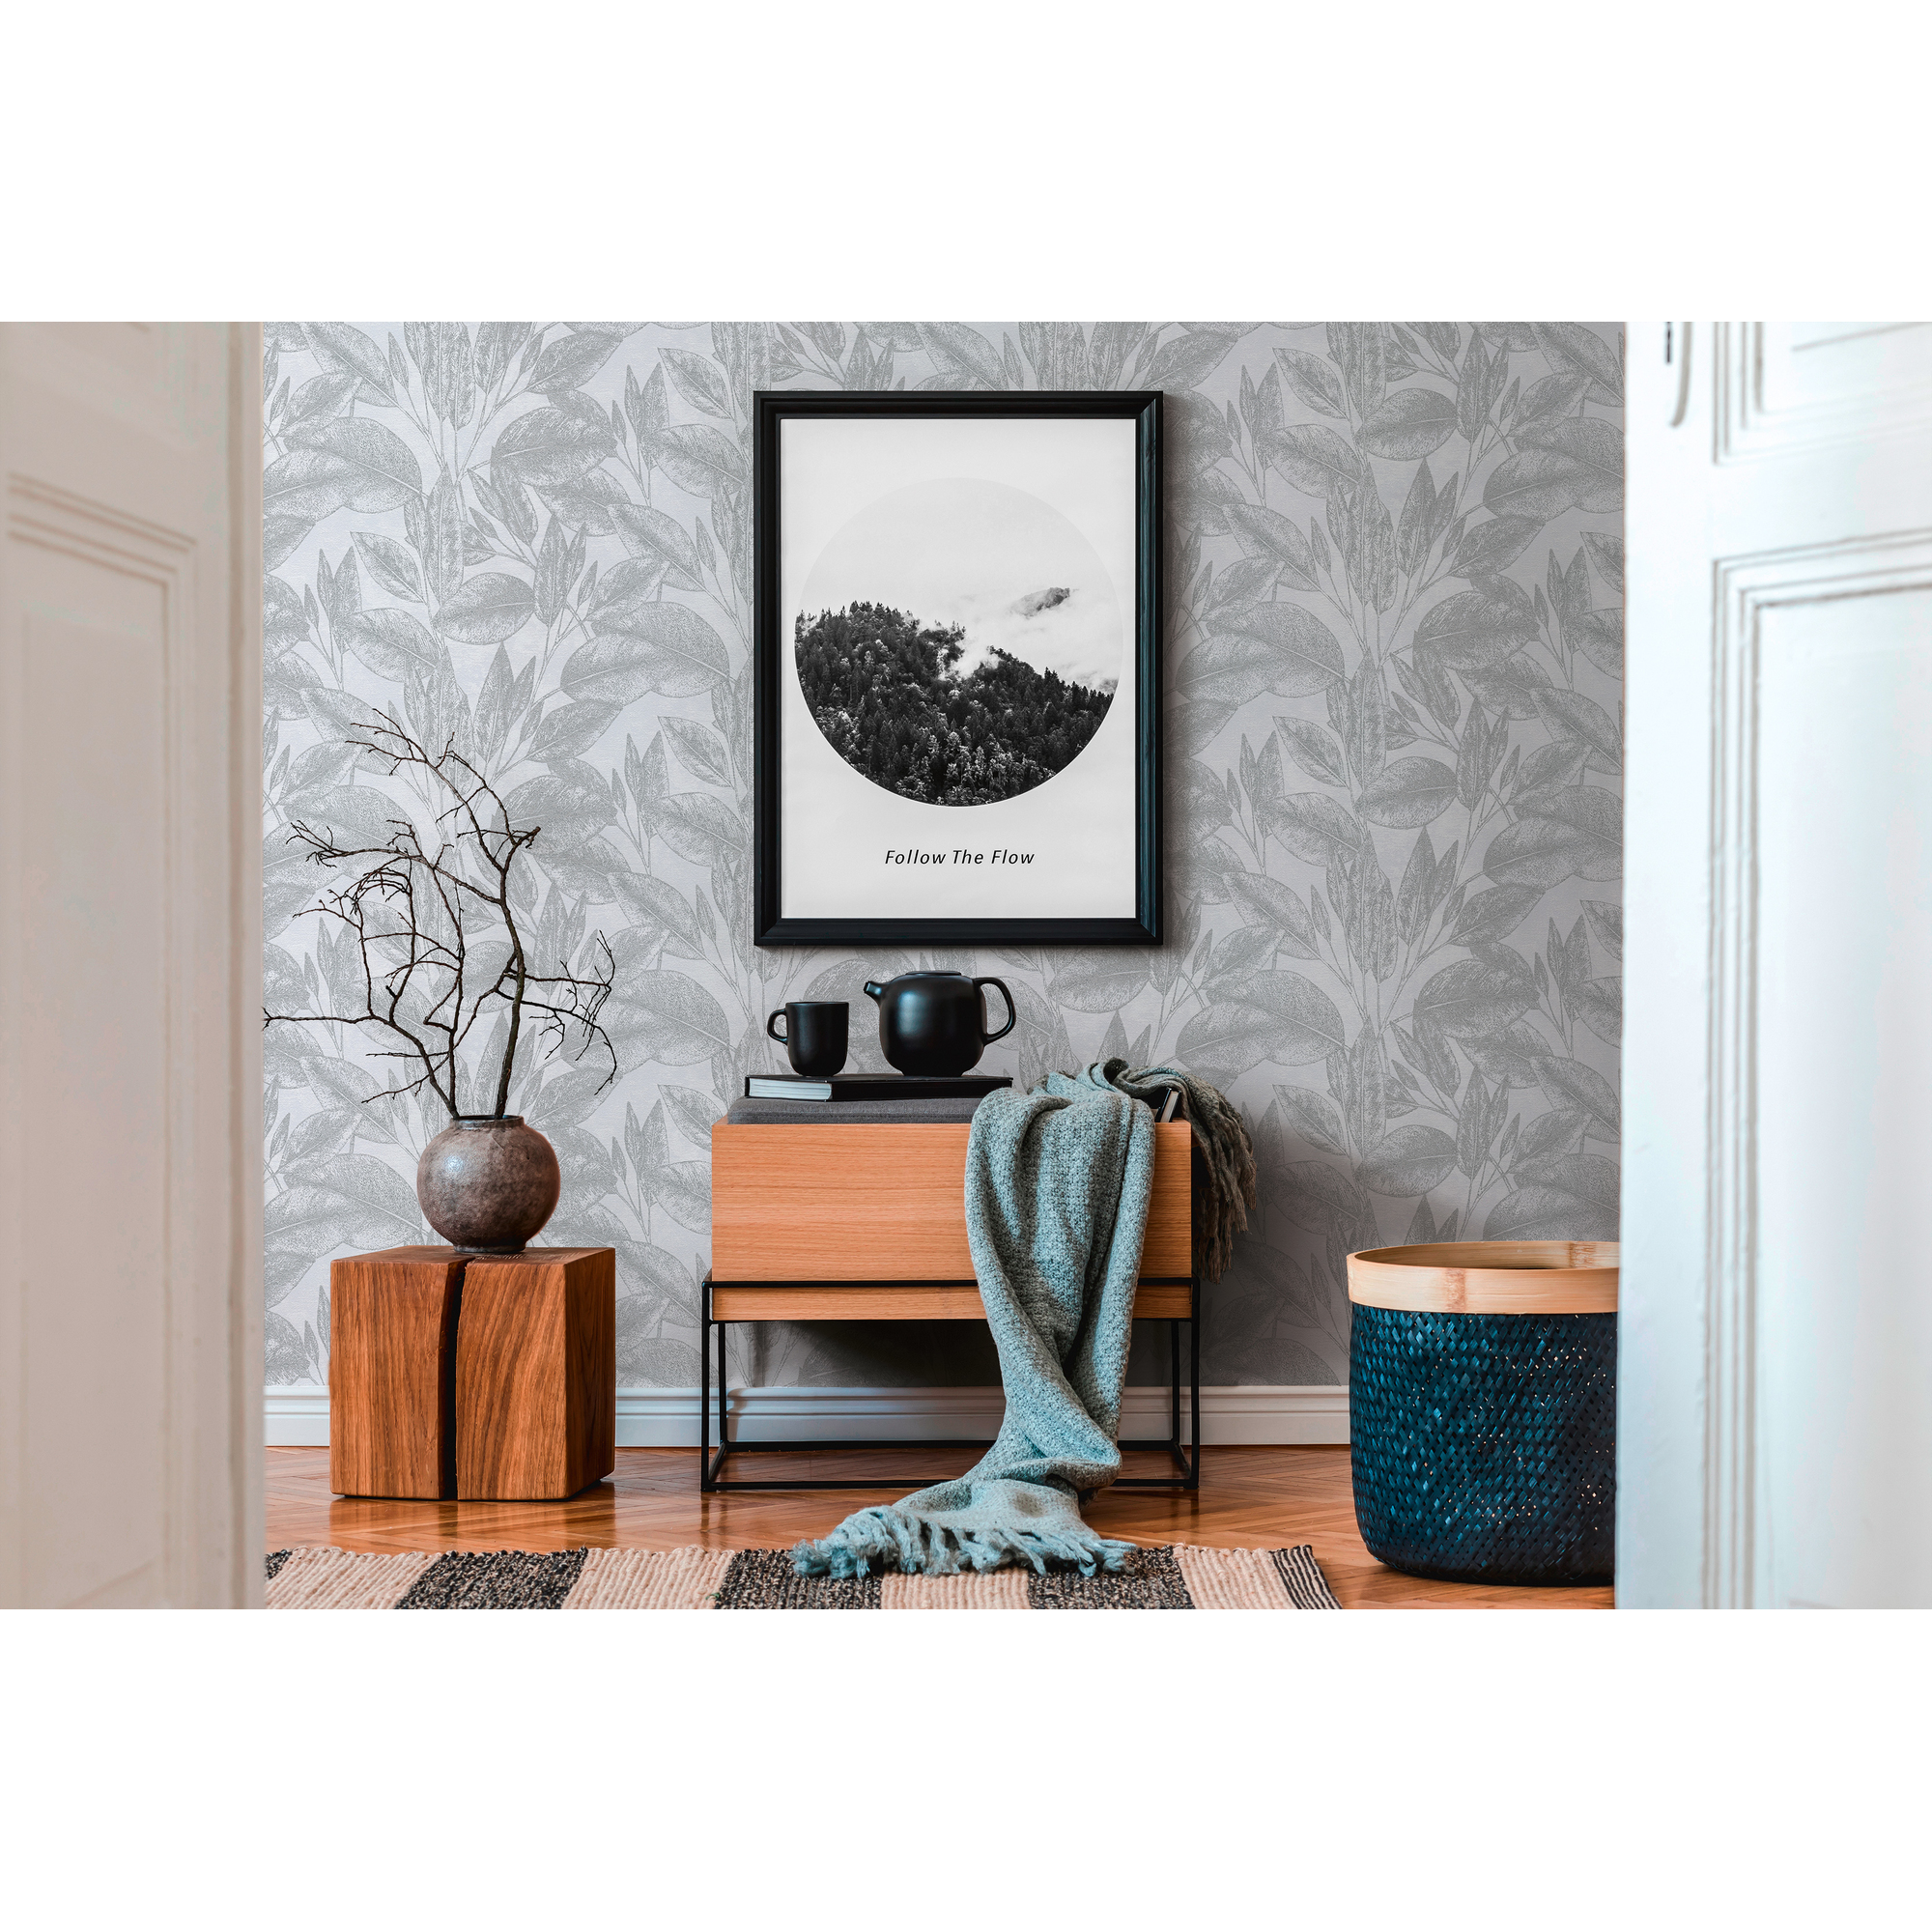 Vliestapete 'Attractive' Blätter silberfarben 53 x 1005 cm + product picture